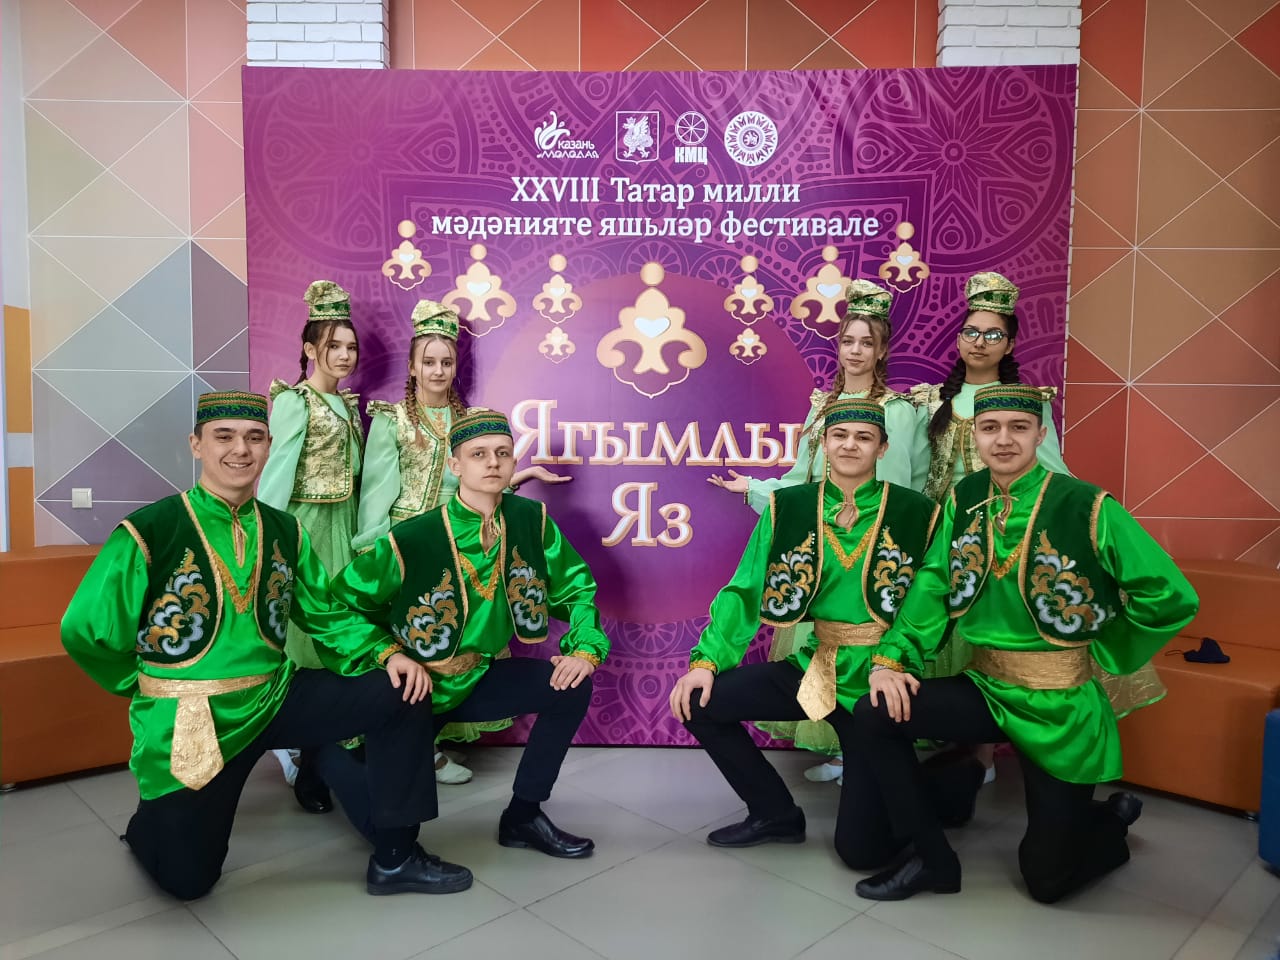 XXVIII Молодежный фестиваль татарской национальной культуры «Ягымлы яз – 2021»